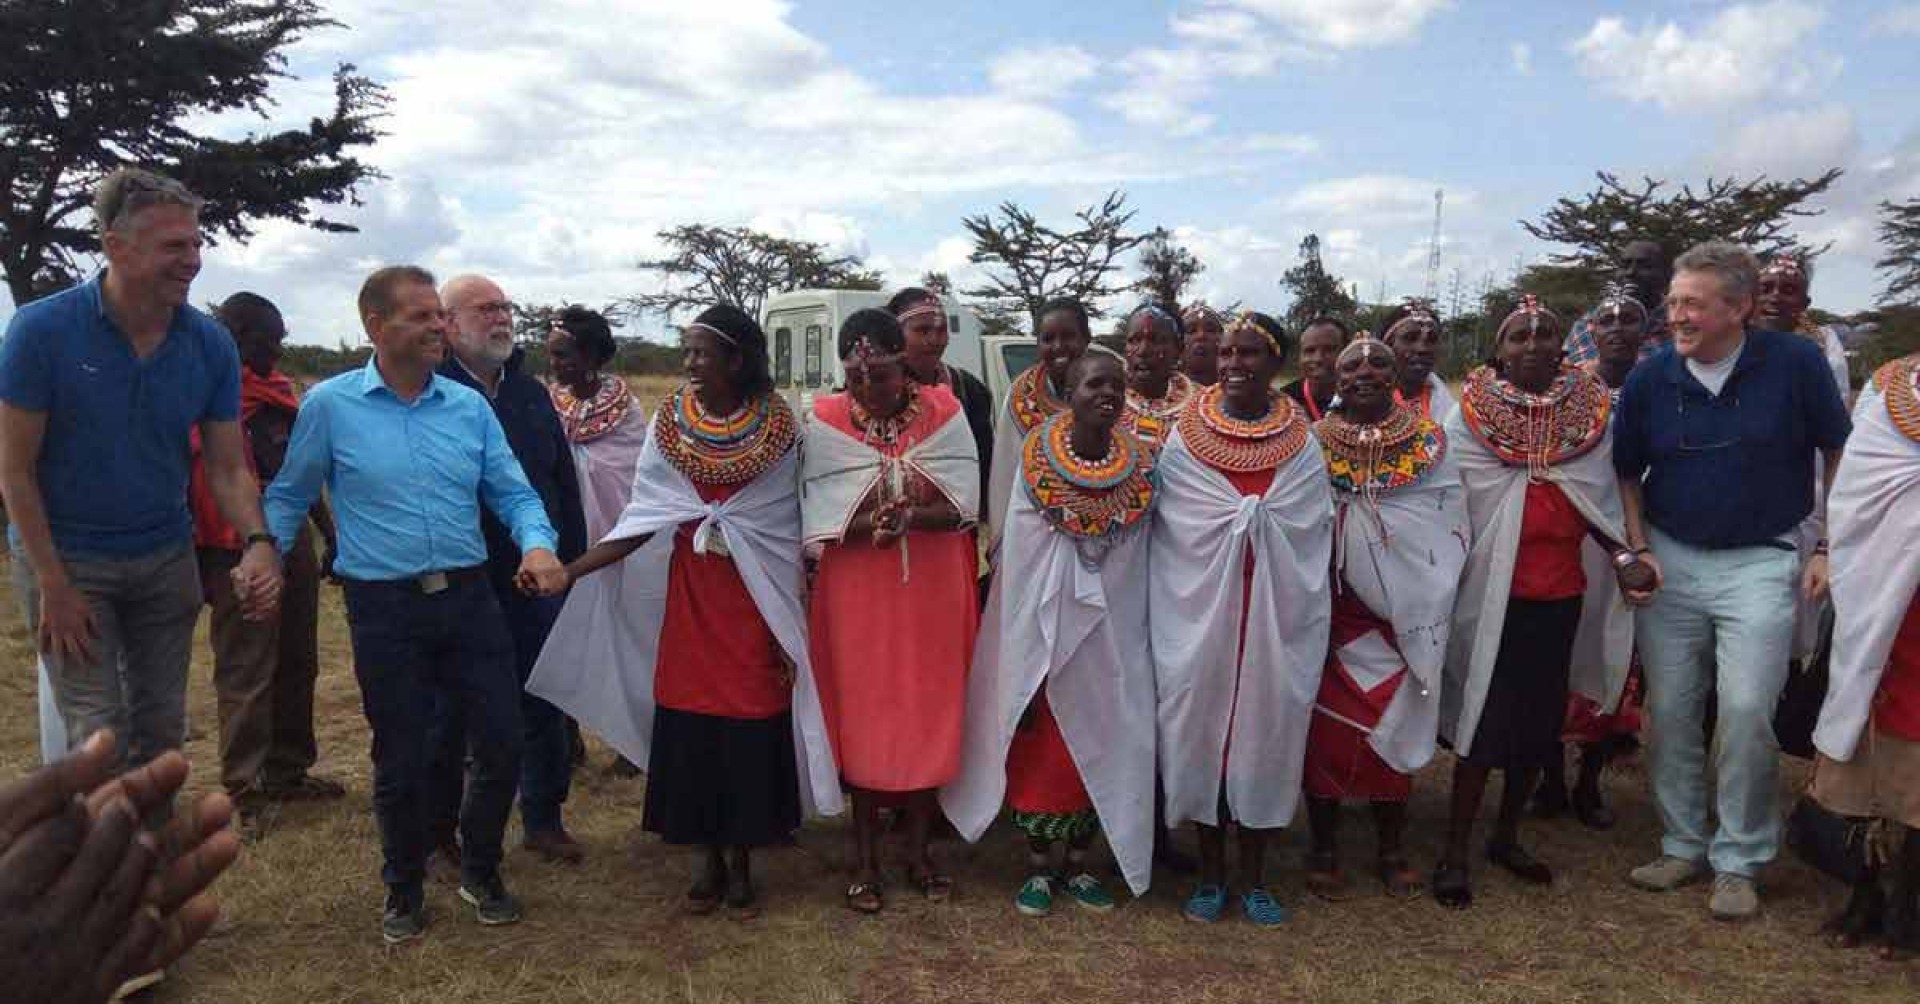 Directievoorzitter leerde onlangs van andere culturen zoals van de Masai-gemeenschap in Kenia. 